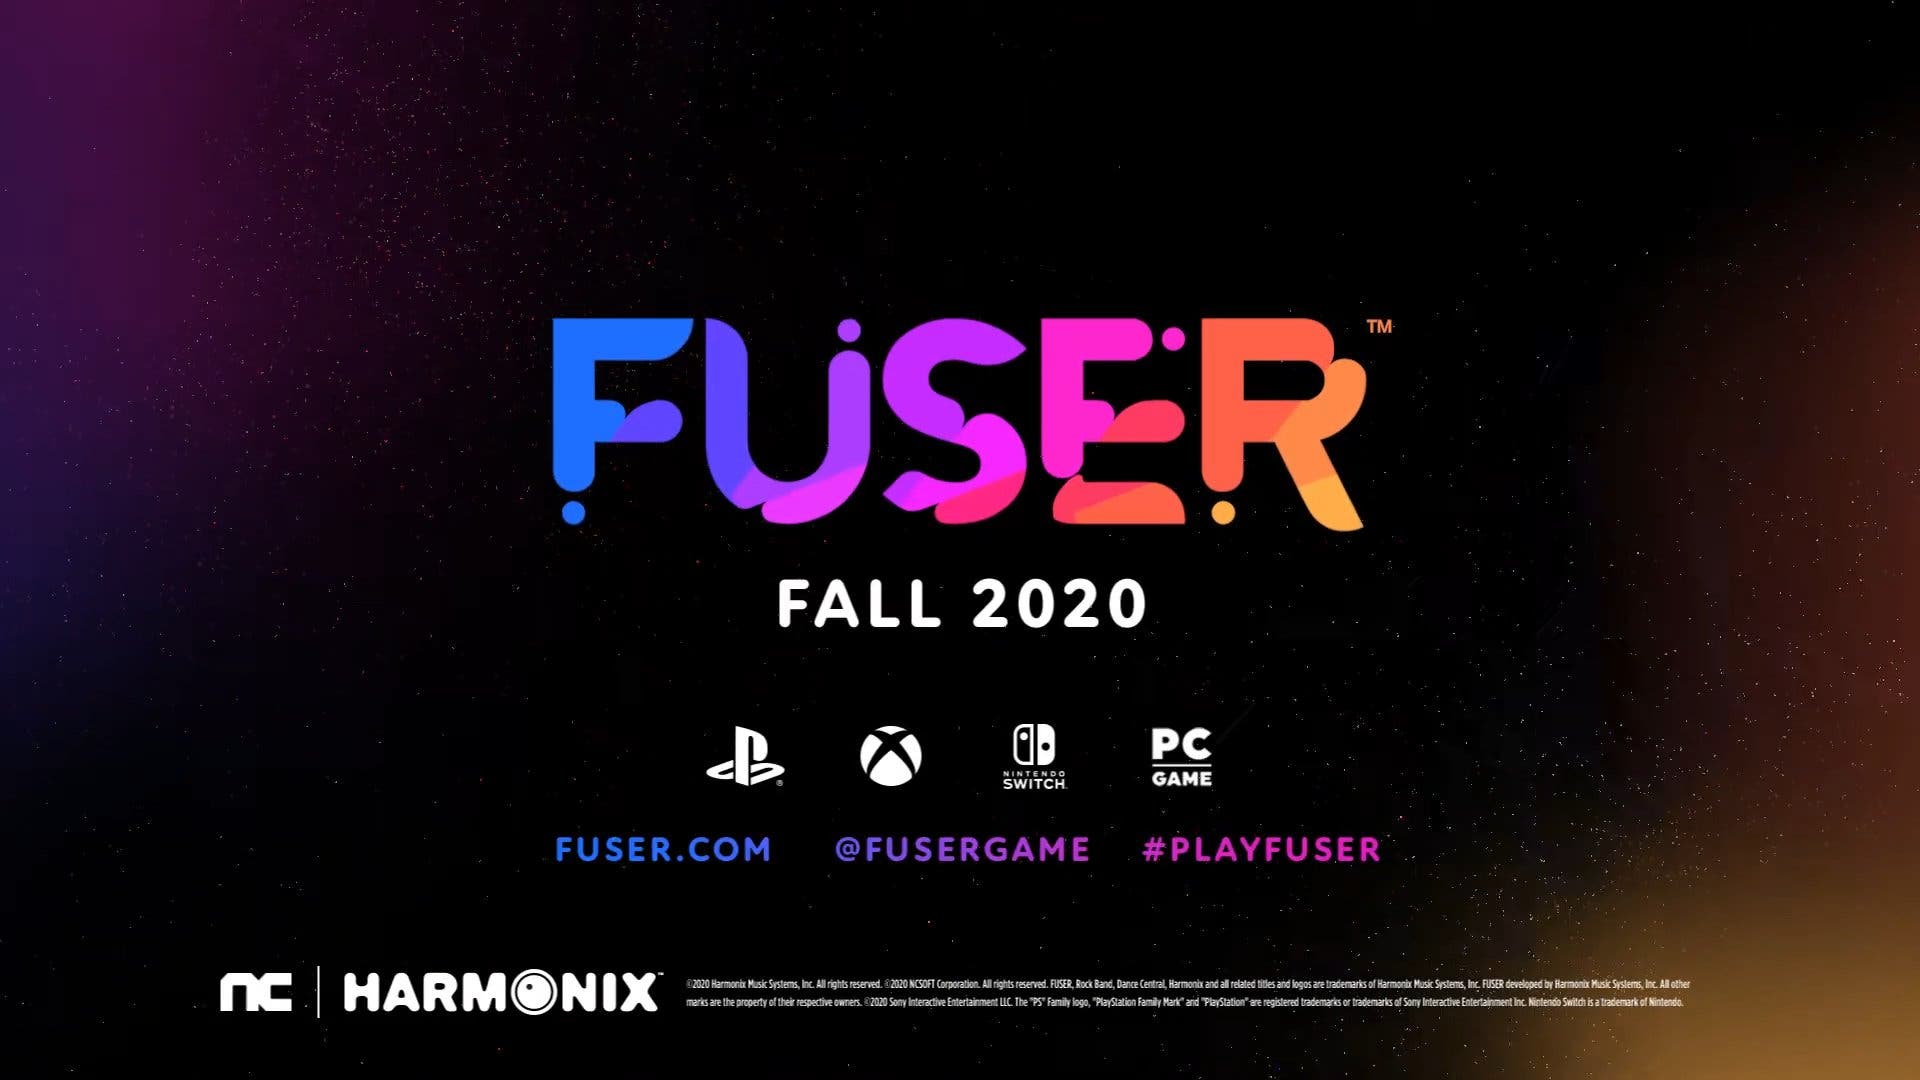 Harmonix anuncia Fuser para Nintendo Switch: disponible en otoño